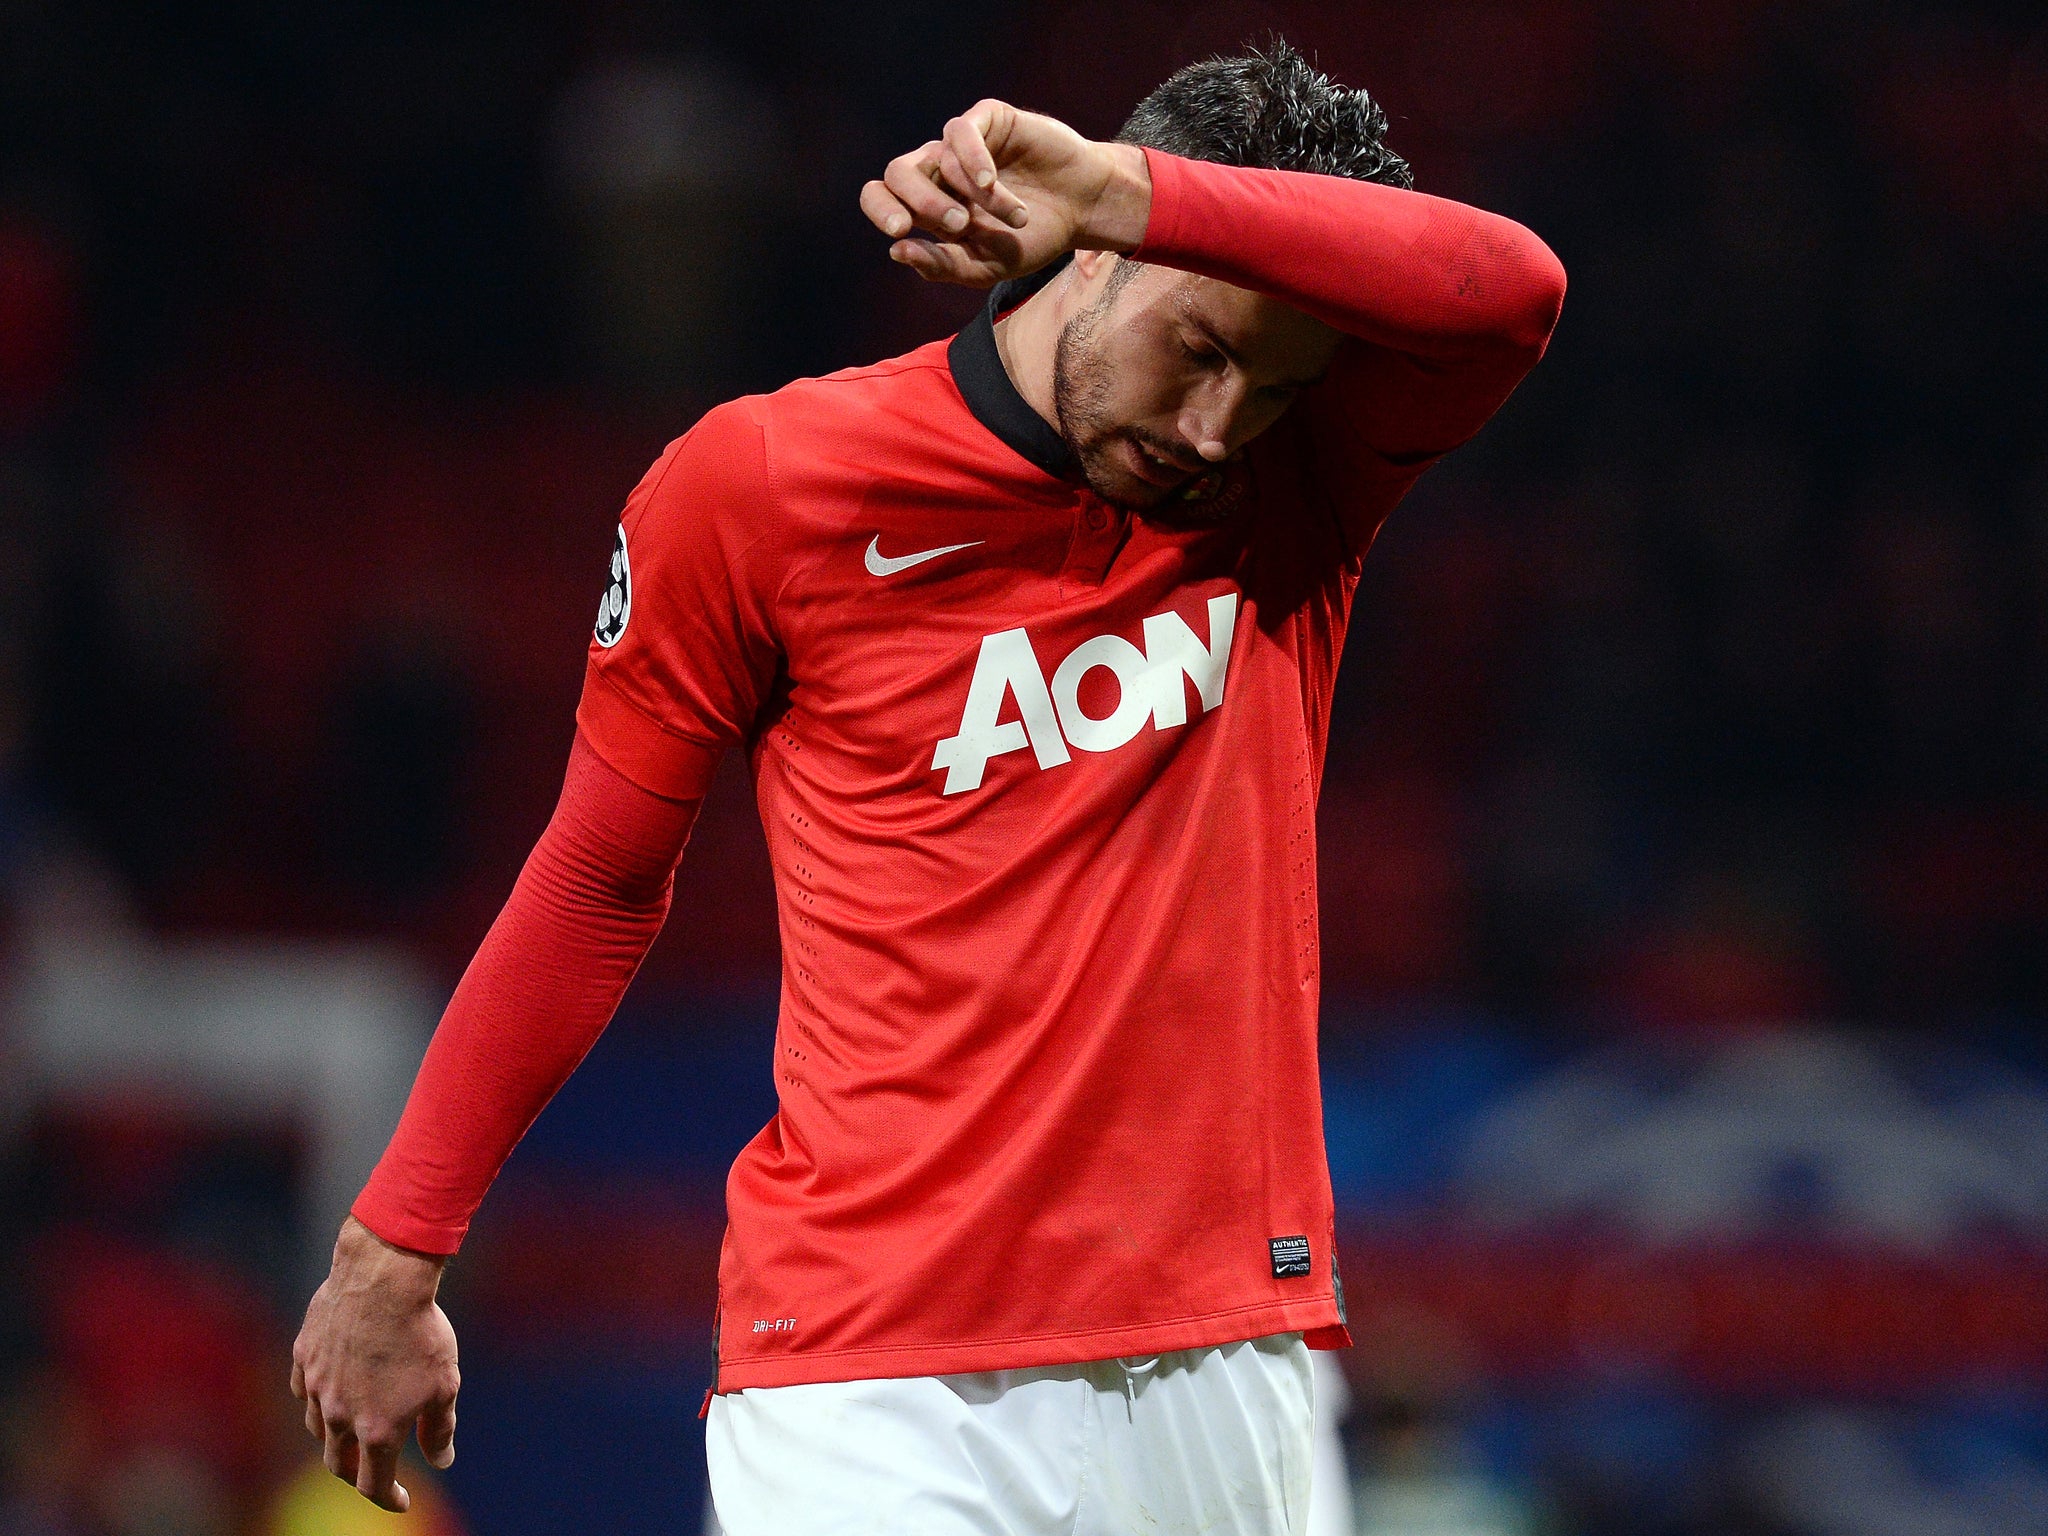 Manchester United striker Robin van Persie has resumed light training